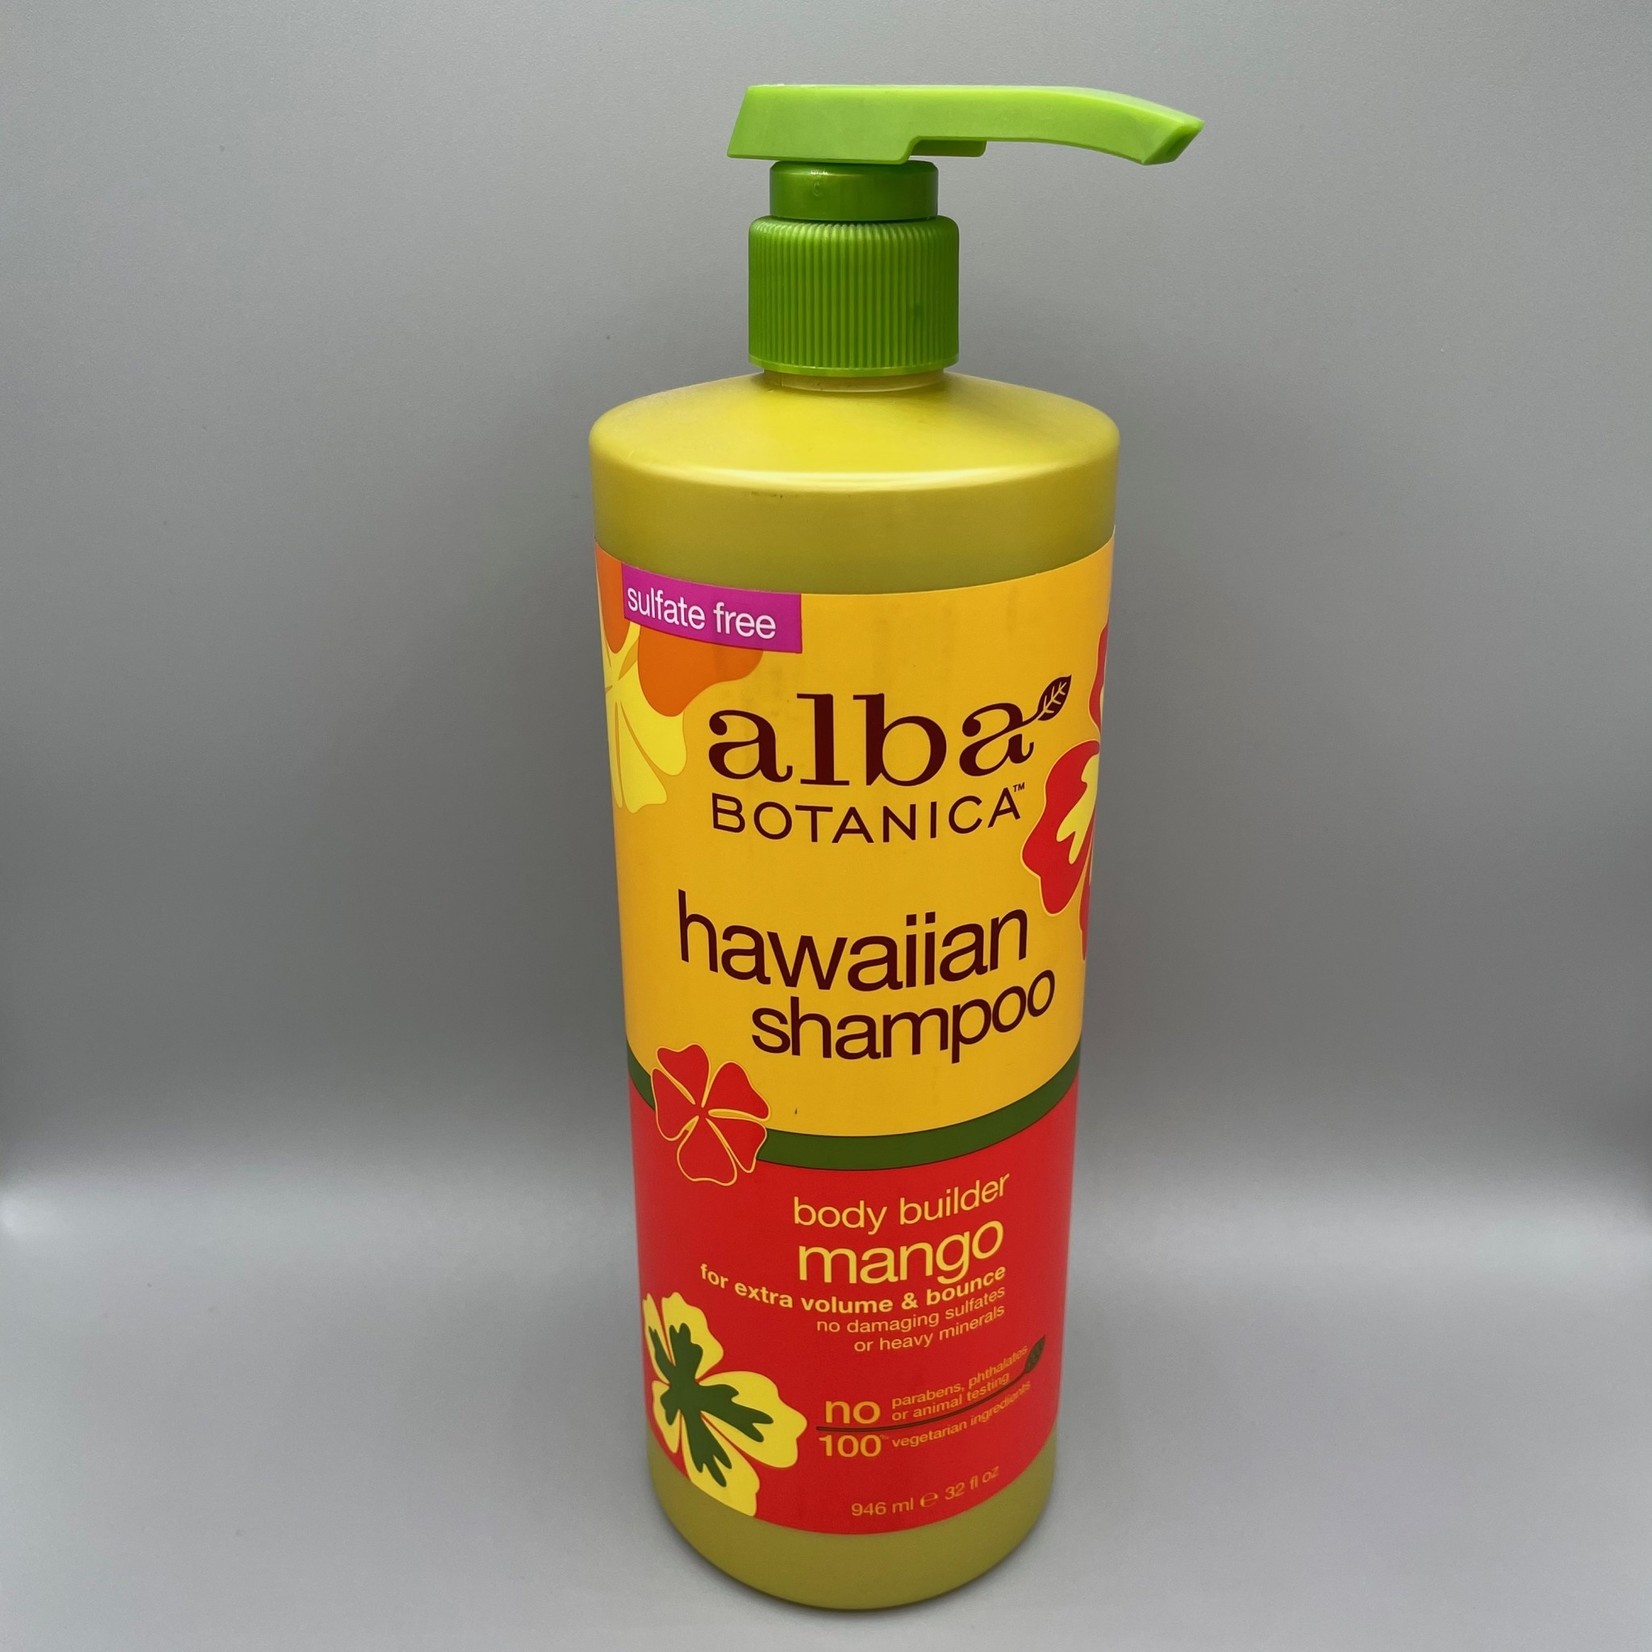 Alba Botanica Shampoo - Mango Body Builder, 32 oz